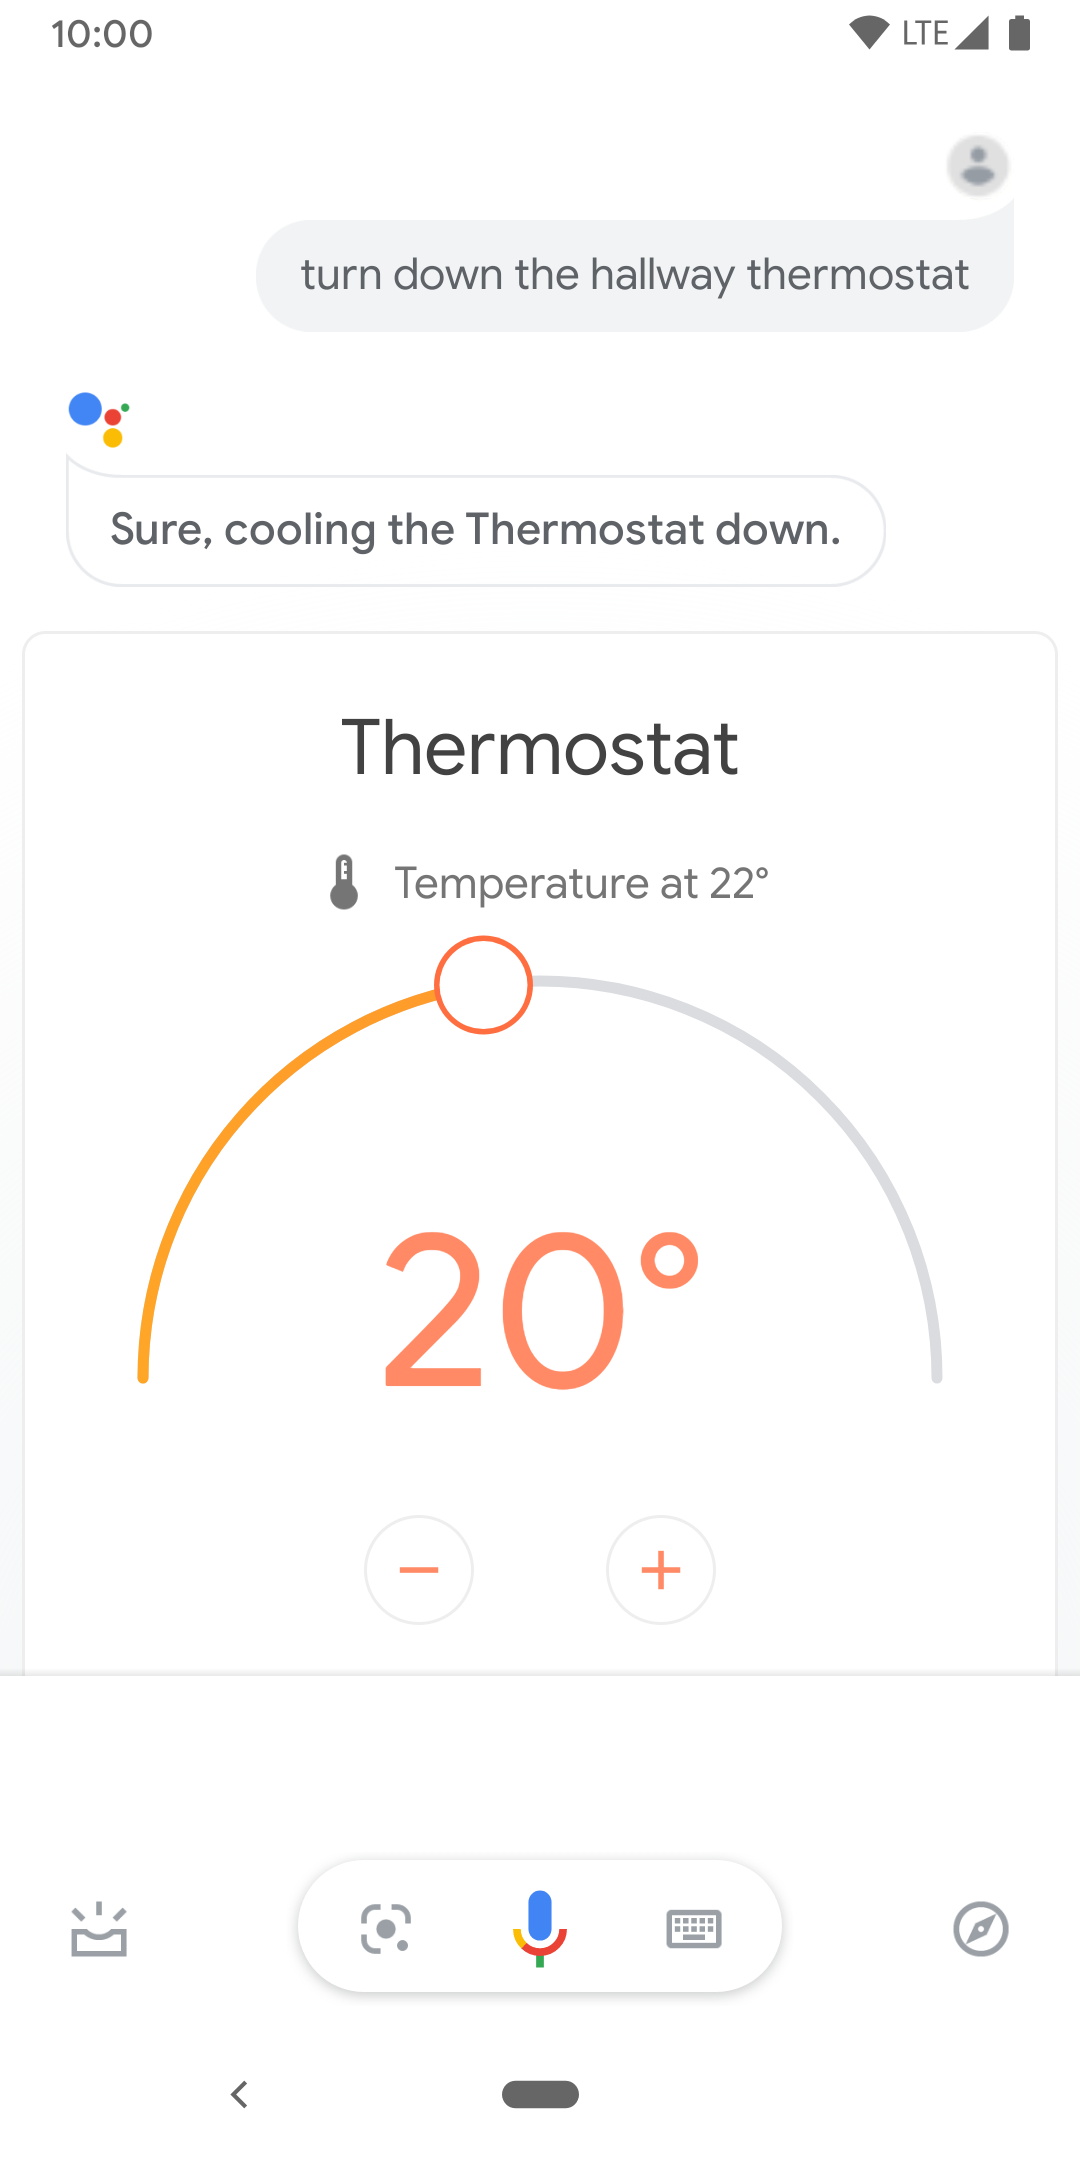 Ten obraz przedstawia sterowanie dotykowe temperaturą termostatu w korytarzu.